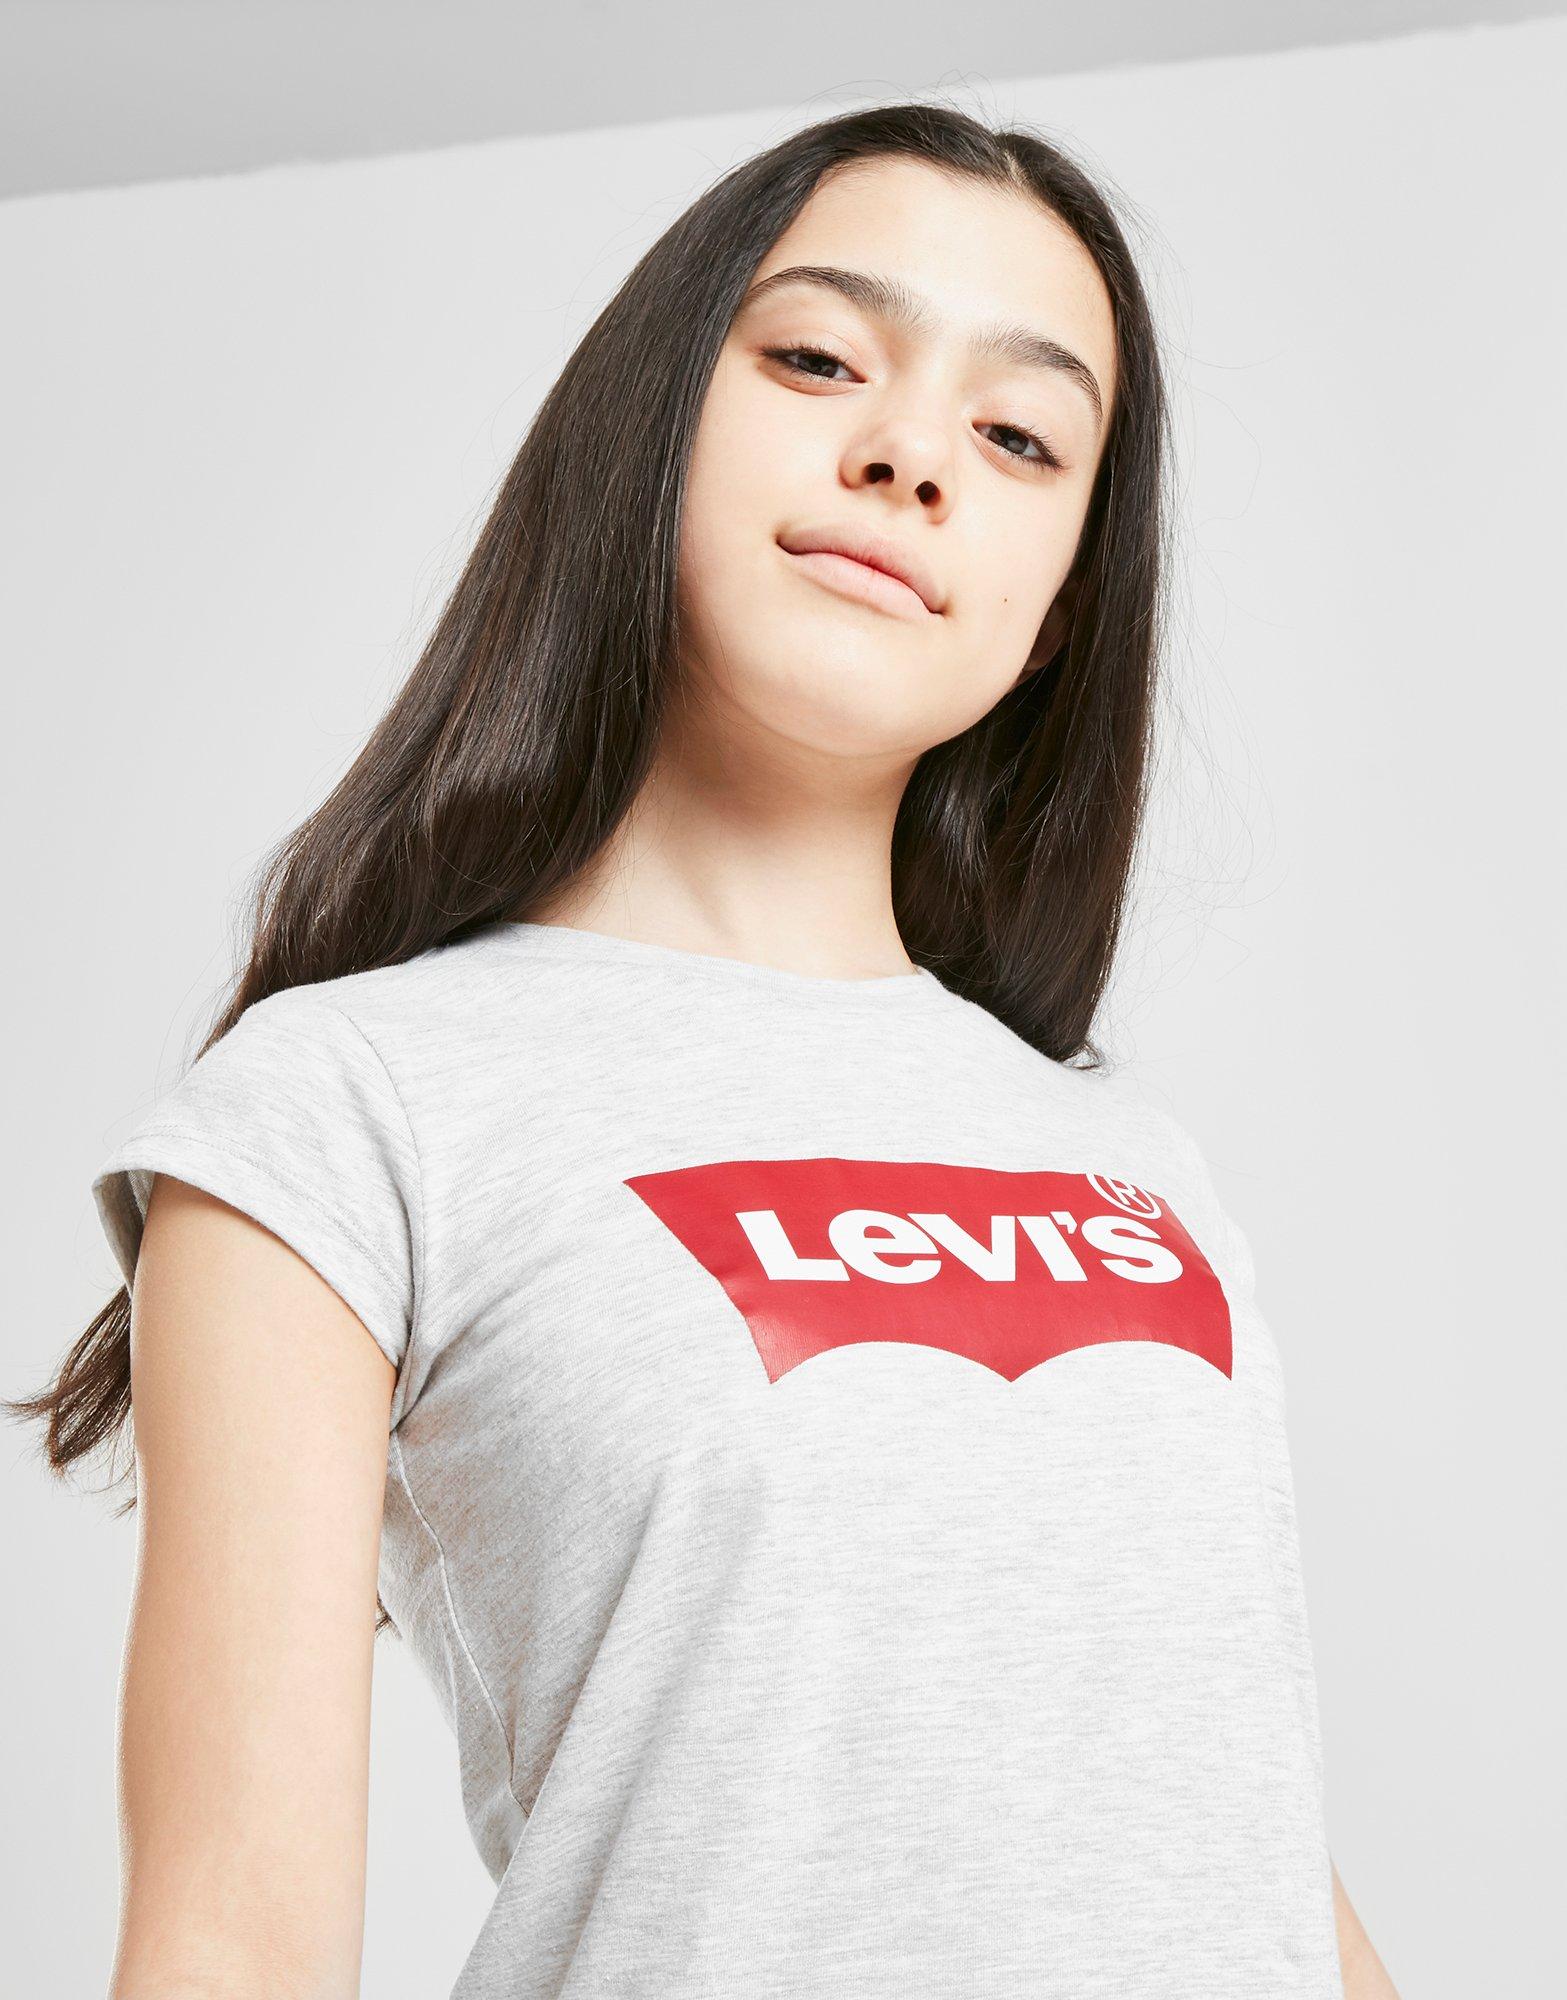 levis girl shirt